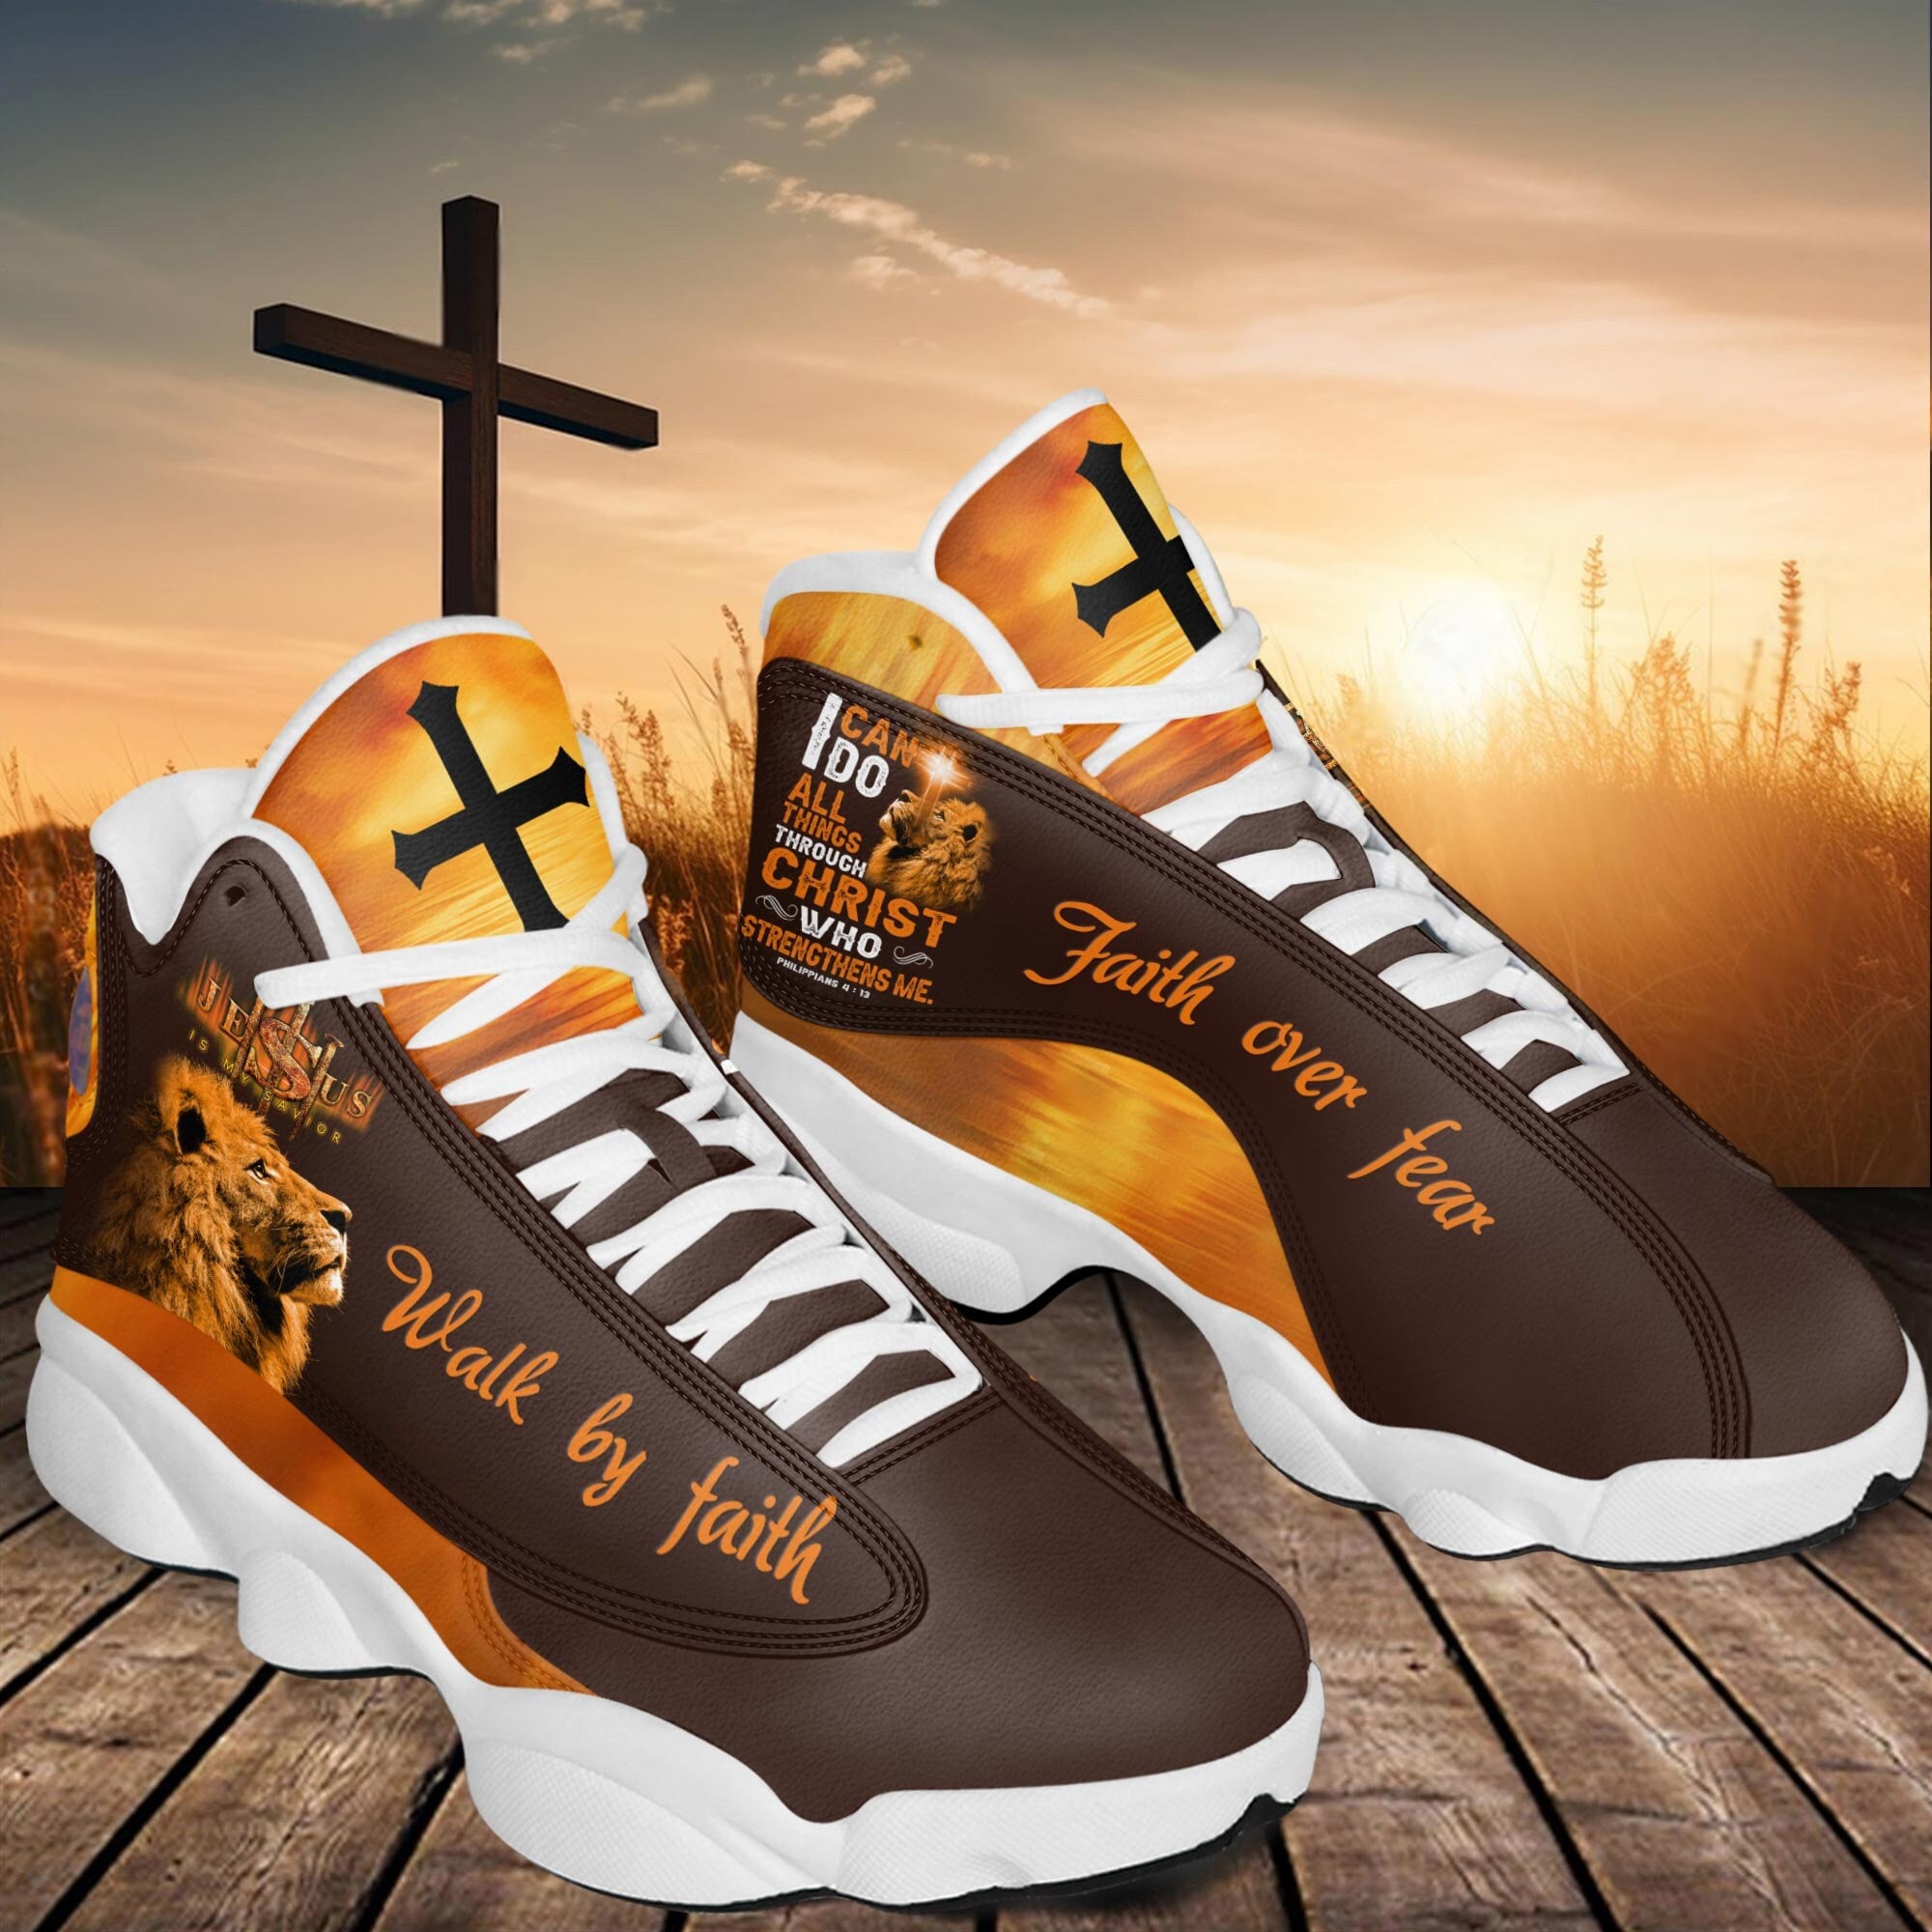 Jesus Faith Over Fear High Top Shoes Christian Cross Faith Based Gifts -  PrideearthDesign